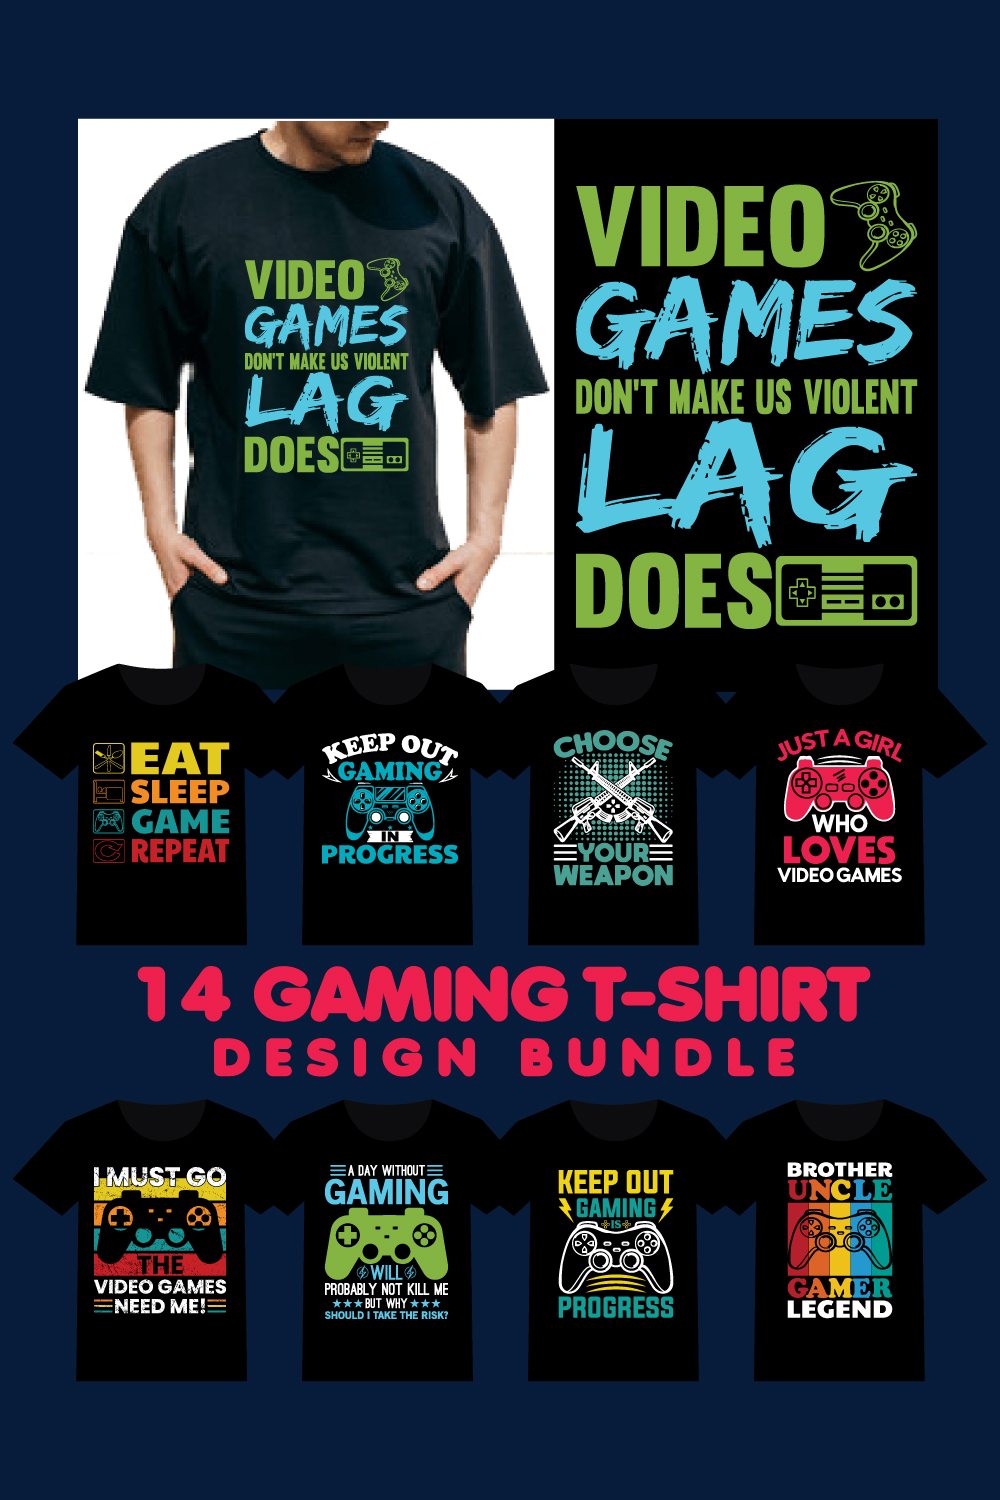 Gaming T-Shirt Design Bundle pinterest image.